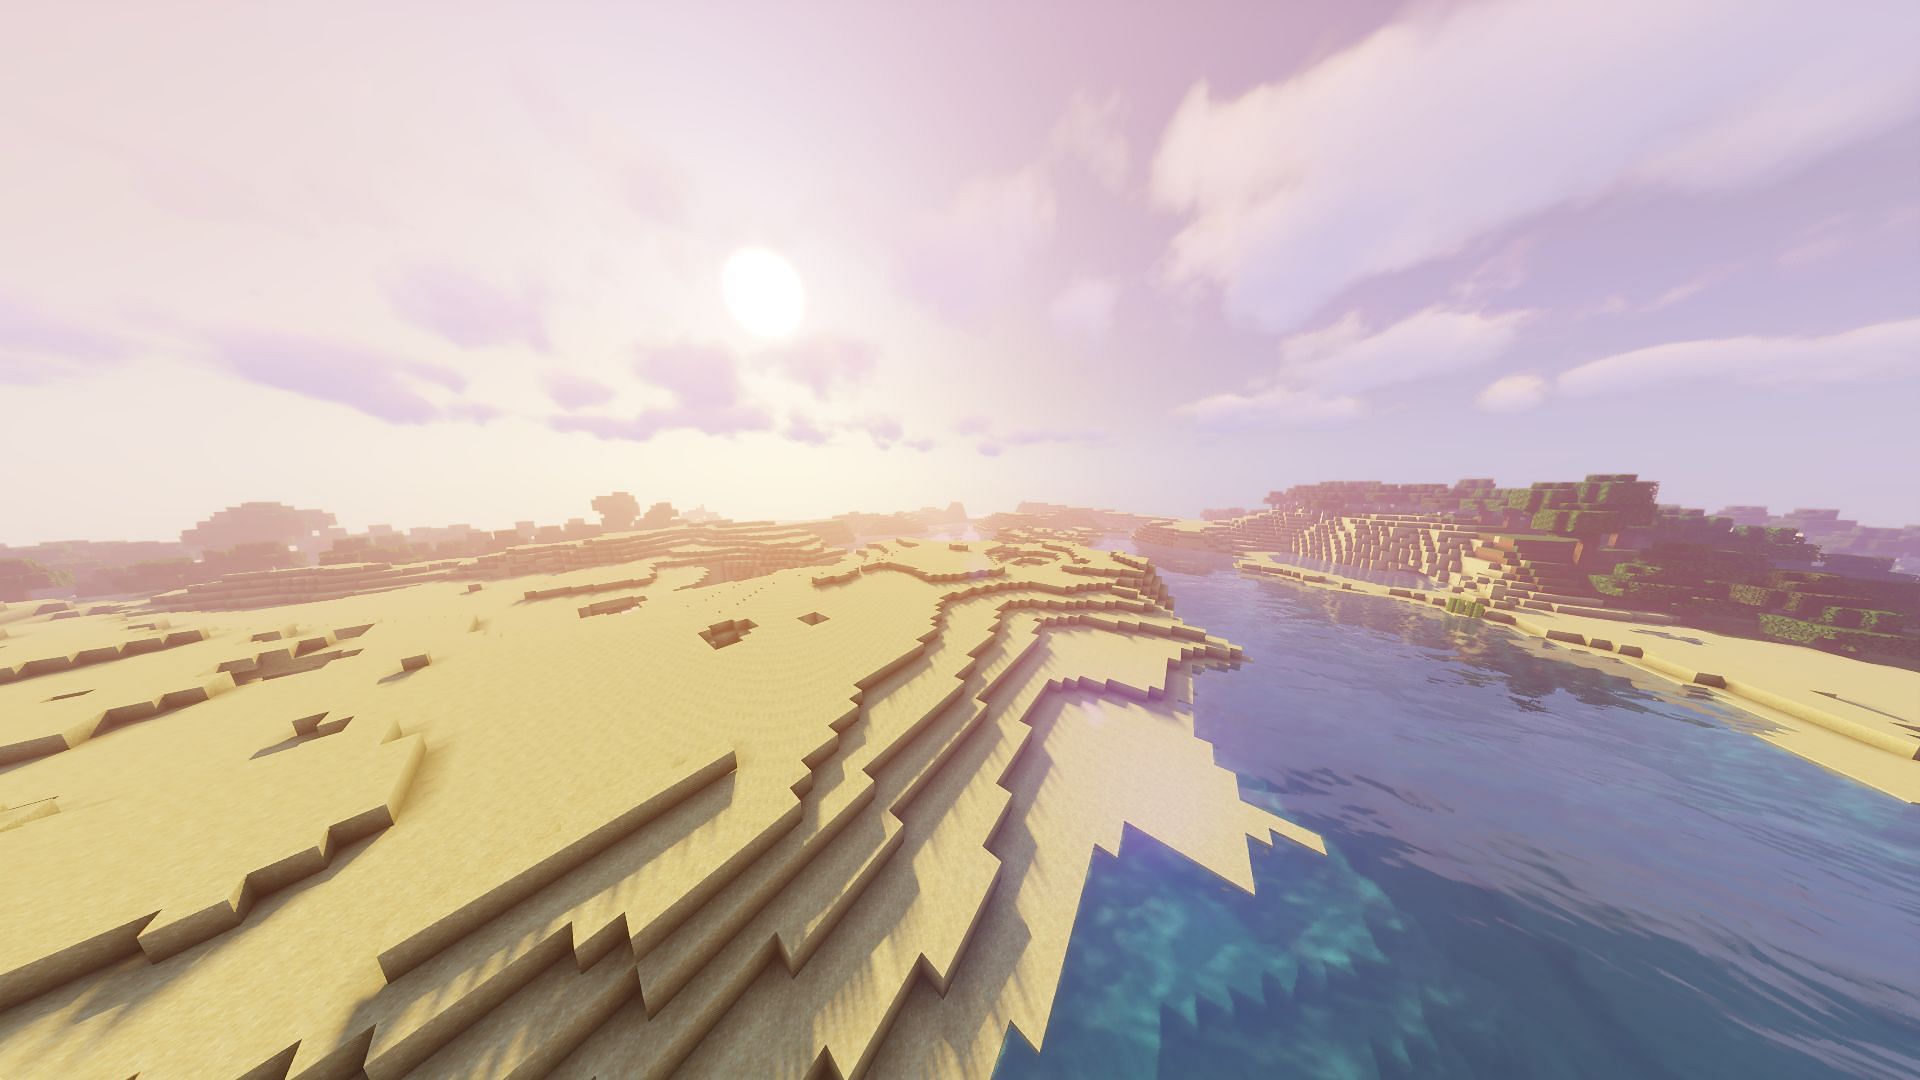 المنطقة الحيوية للشاطئ كبيرة بشكل غير طبيعي (الصورة من Minecraft)